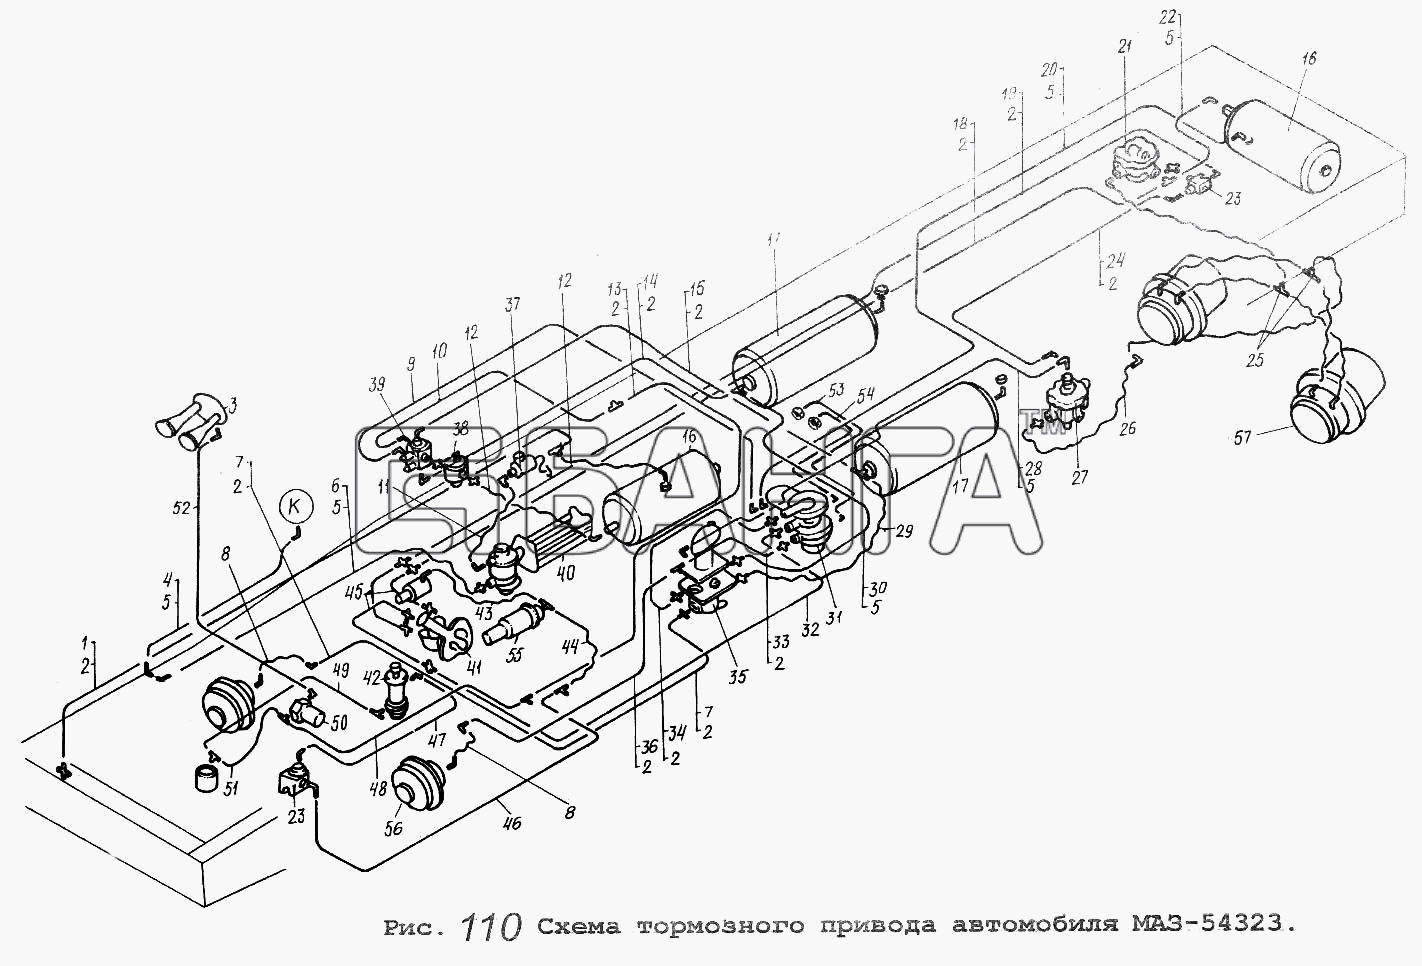 МАЗ МАЗ-64229 Схема Схема тормозного привода автомобиля banga.ua